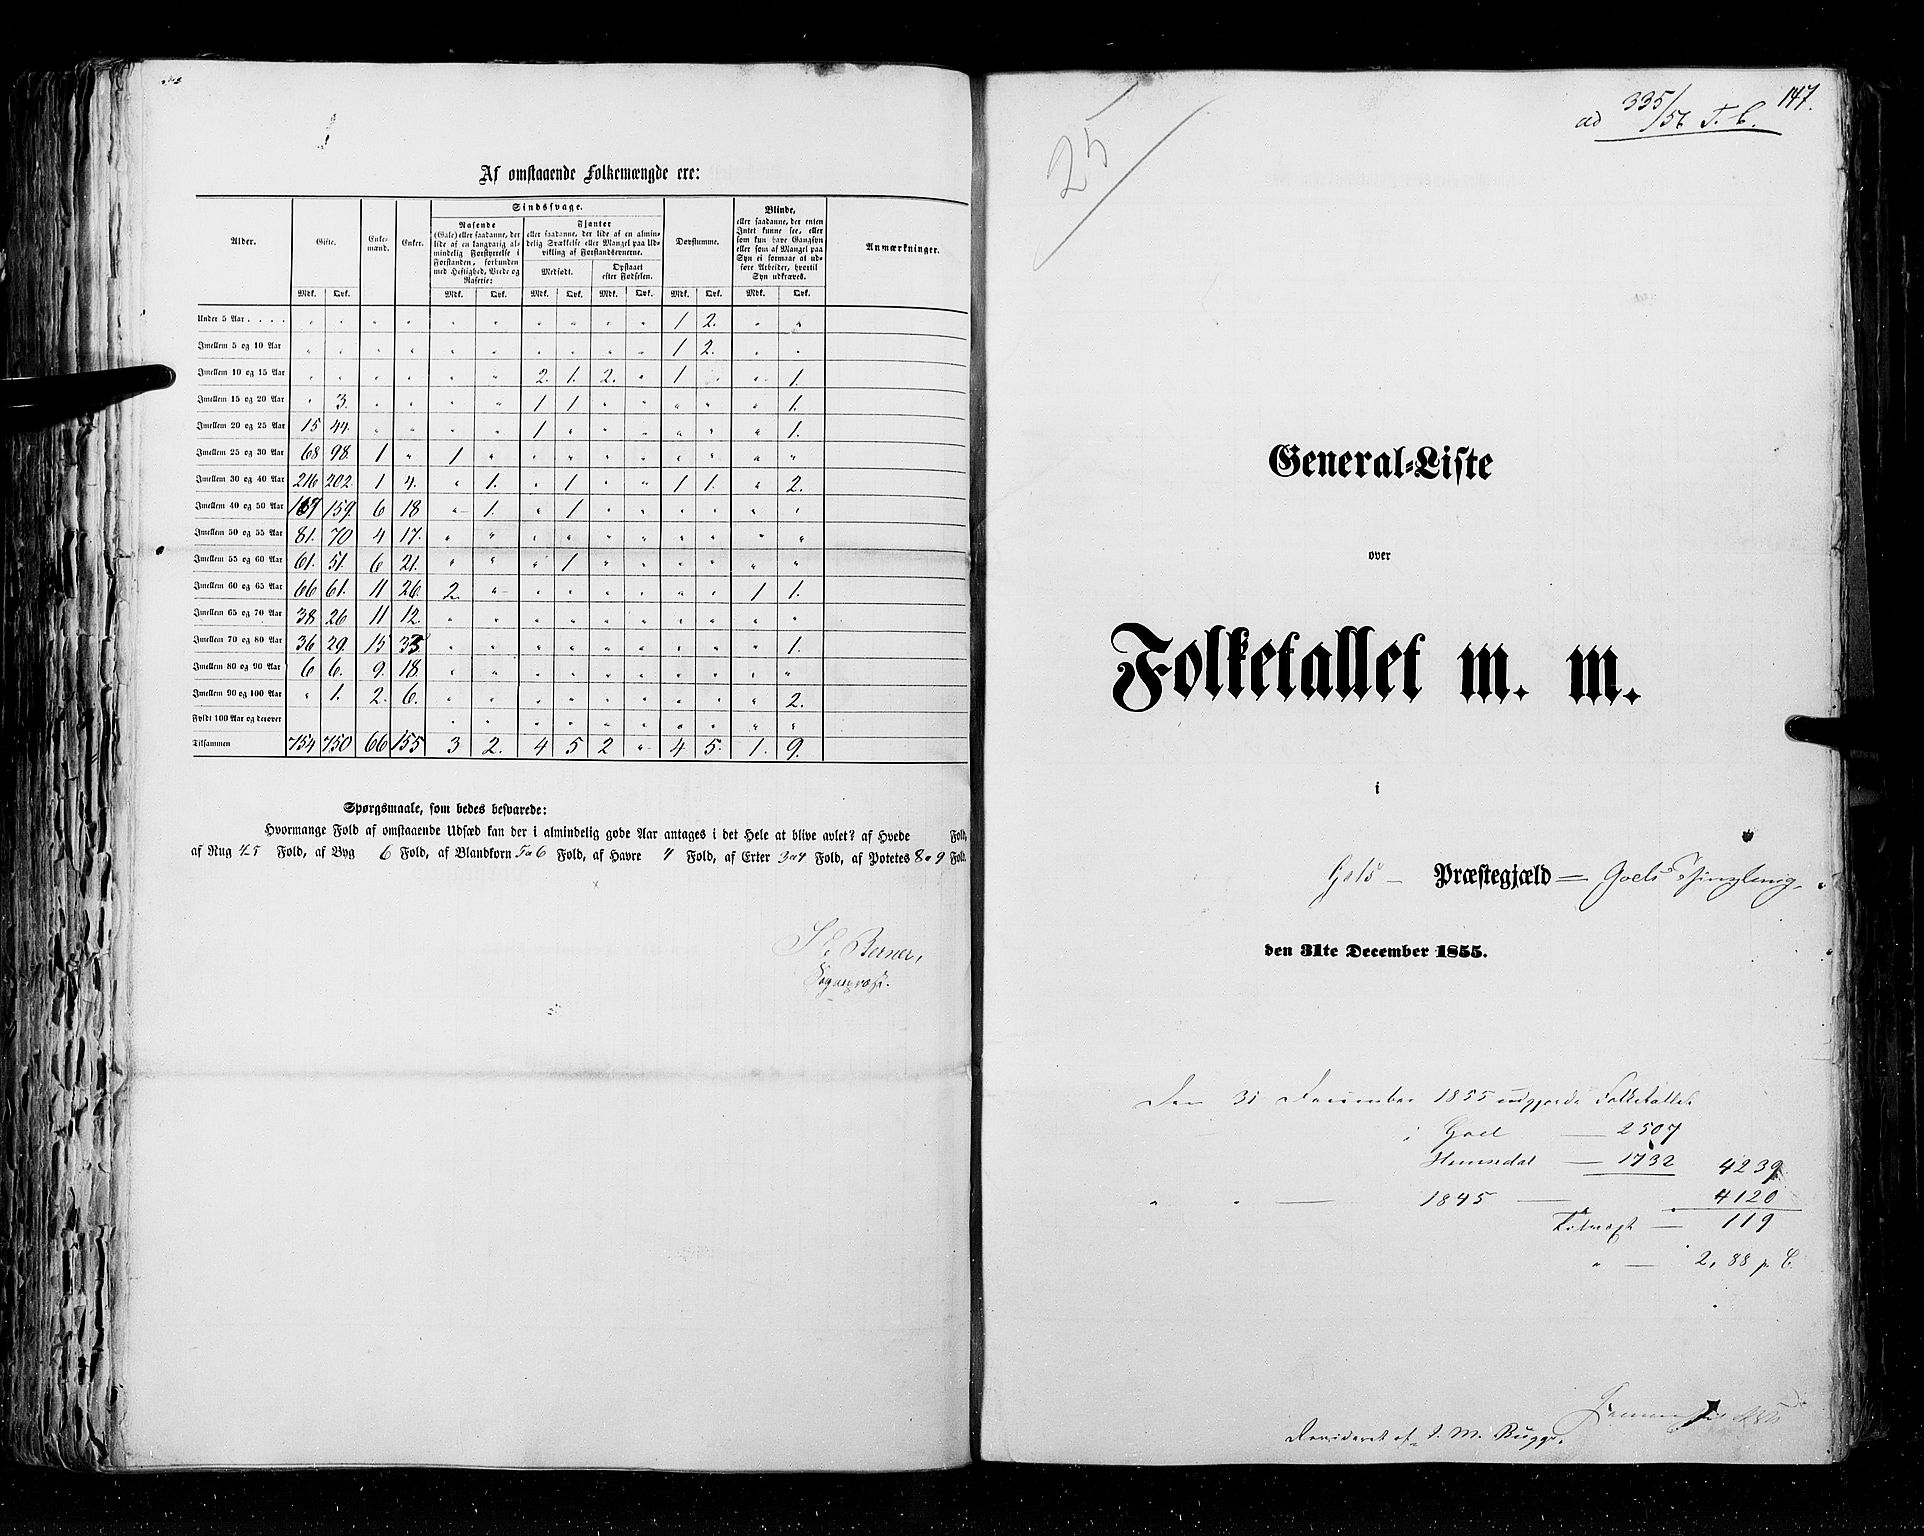 RA, Census 1855, vol. 2: Kristians amt, Buskerud amt og Jarlsberg og Larvik amt, 1855, p. 147